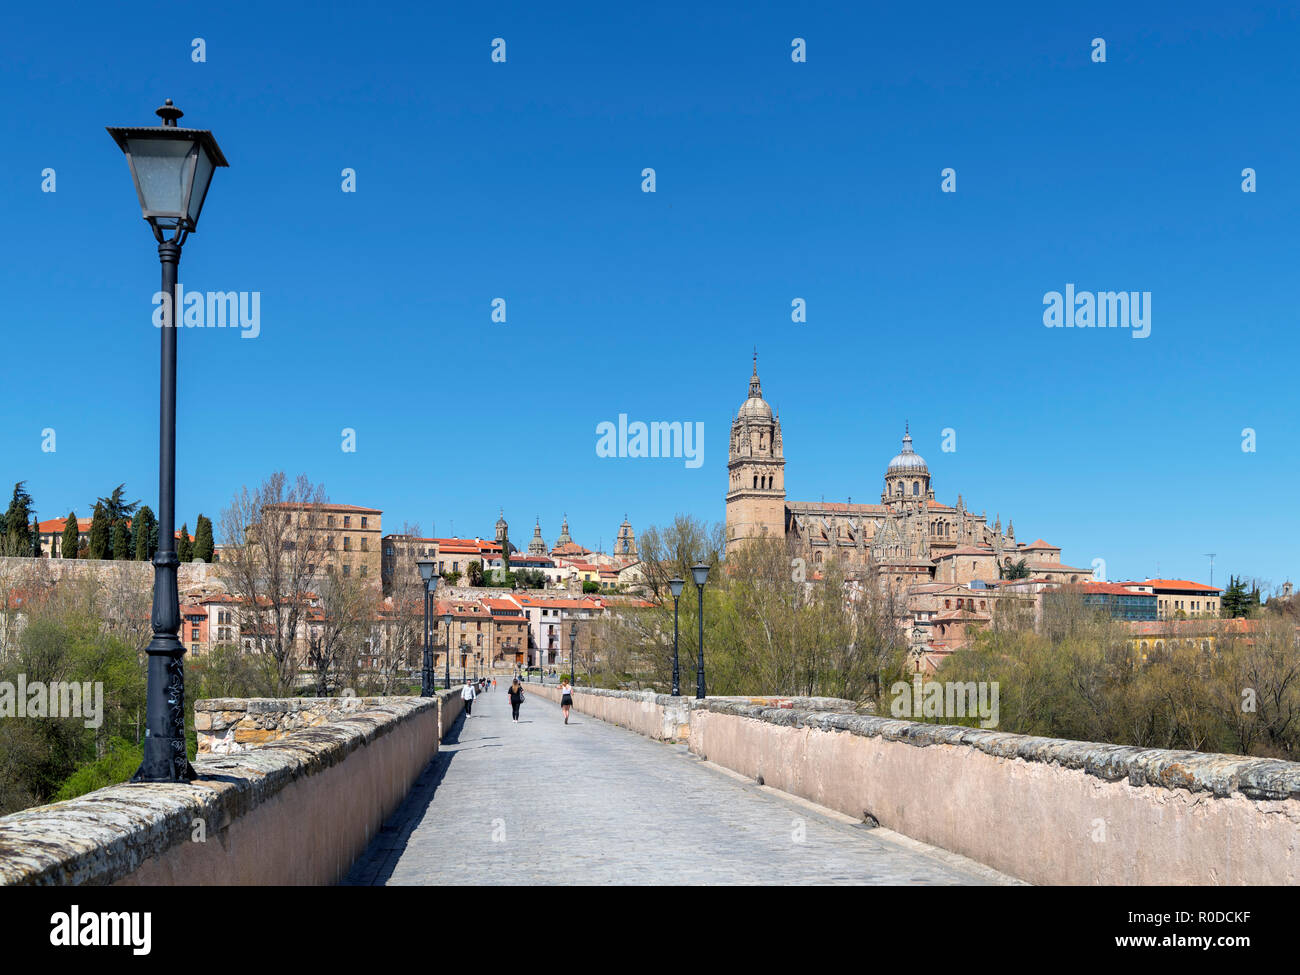 Blick auf die Altstadt und Kathedralen von der Puente Romano (Römische Brücke), Salamanca, Castilla y Leon, Spanien Stockfoto